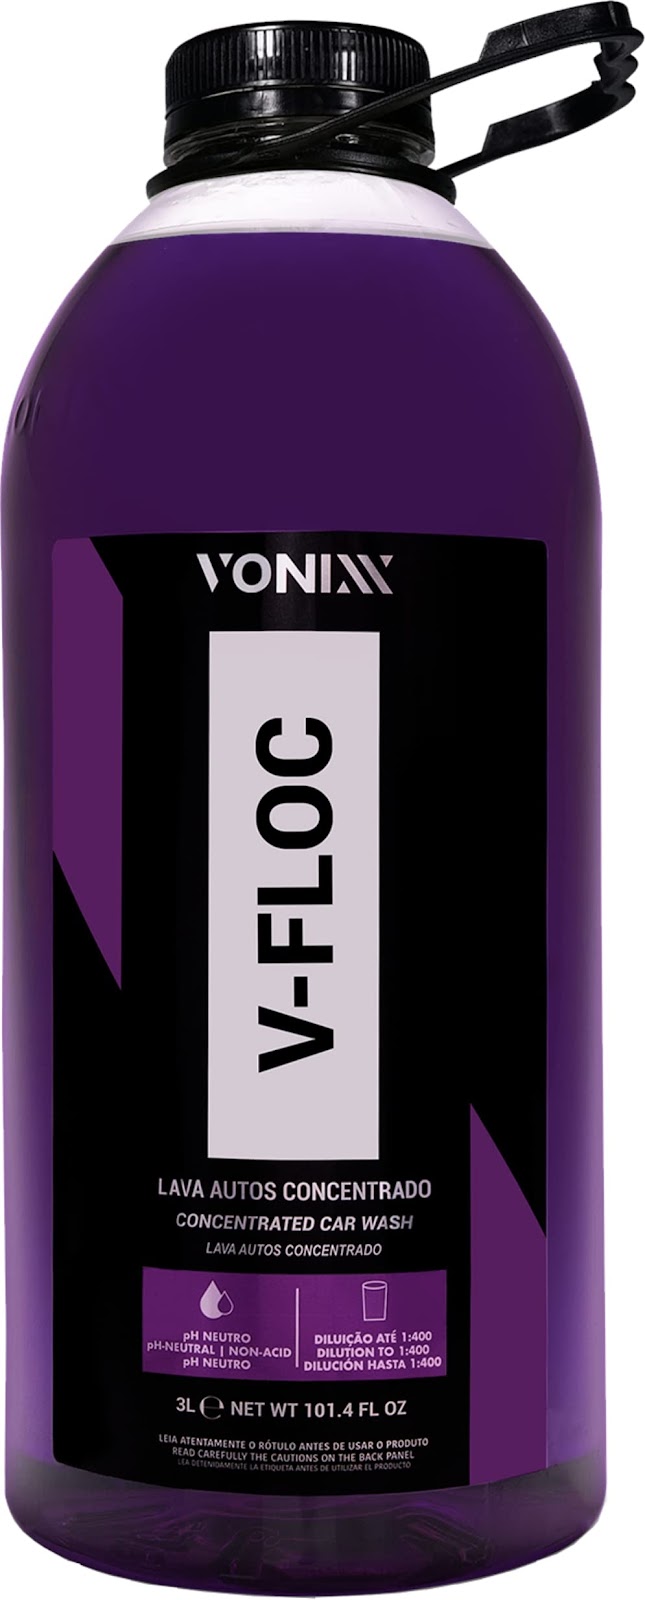 Vonixx Shampoo Automotivo Concentrado 1:400 V-floc 3 Litros